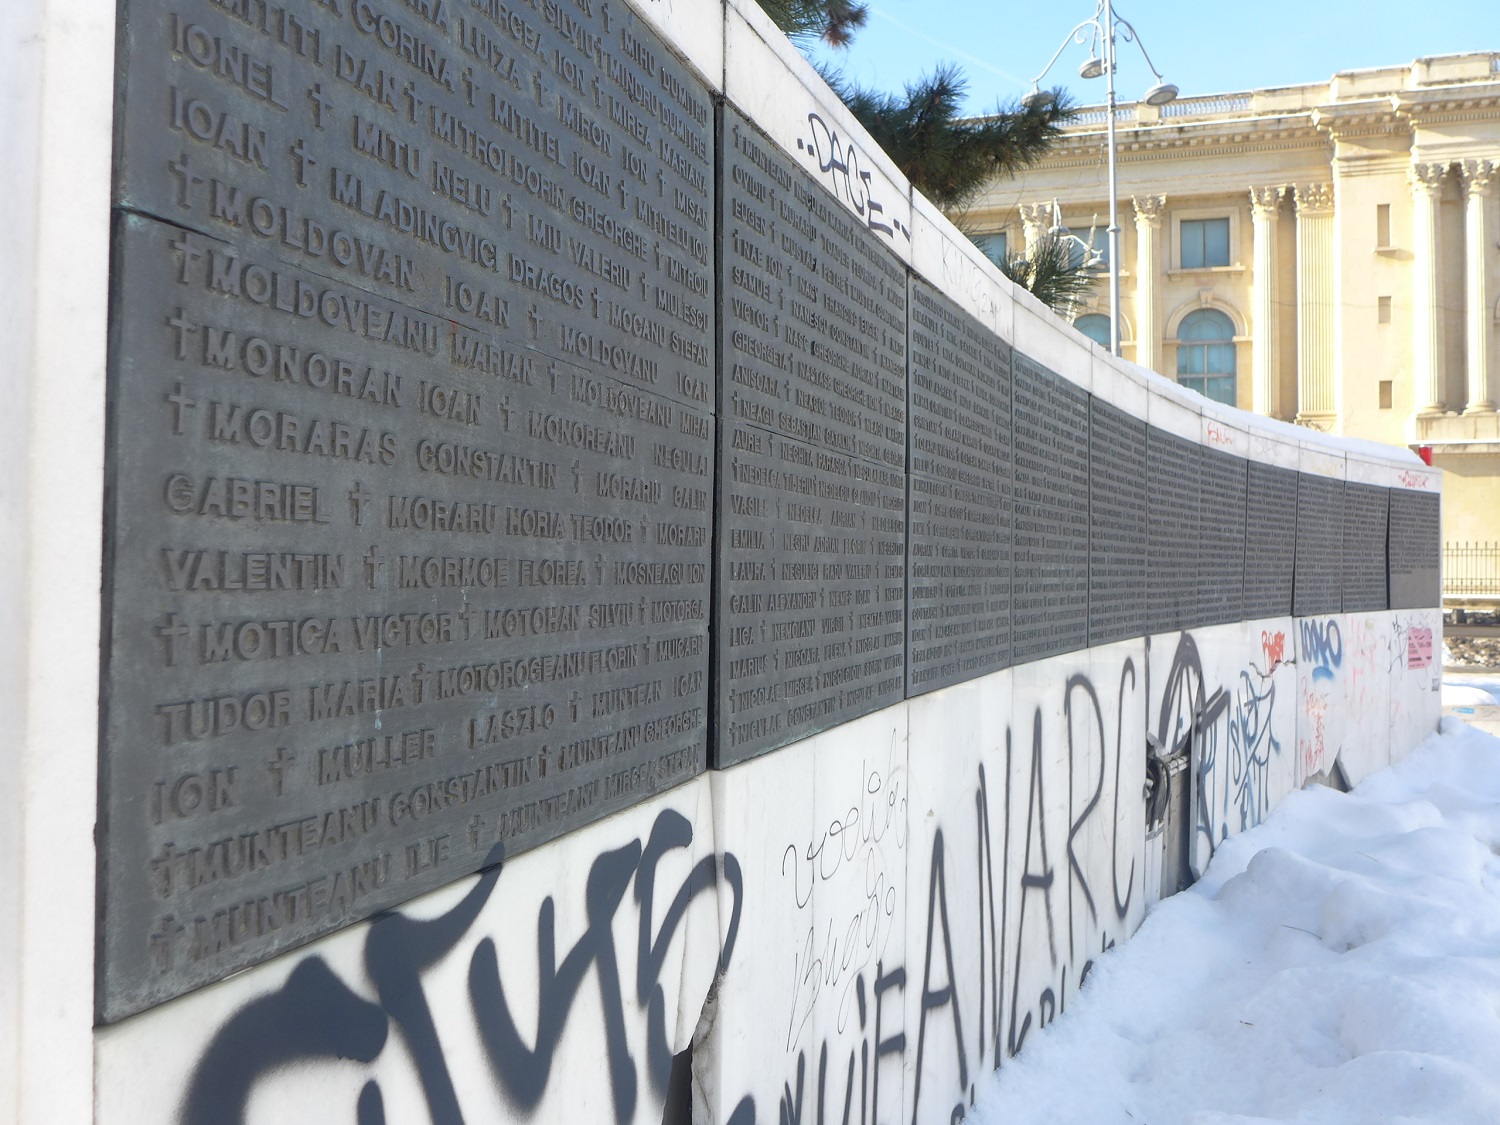 Au pied de ce monument, il y a deux murs arrondis, qui portent les noms des victimes.